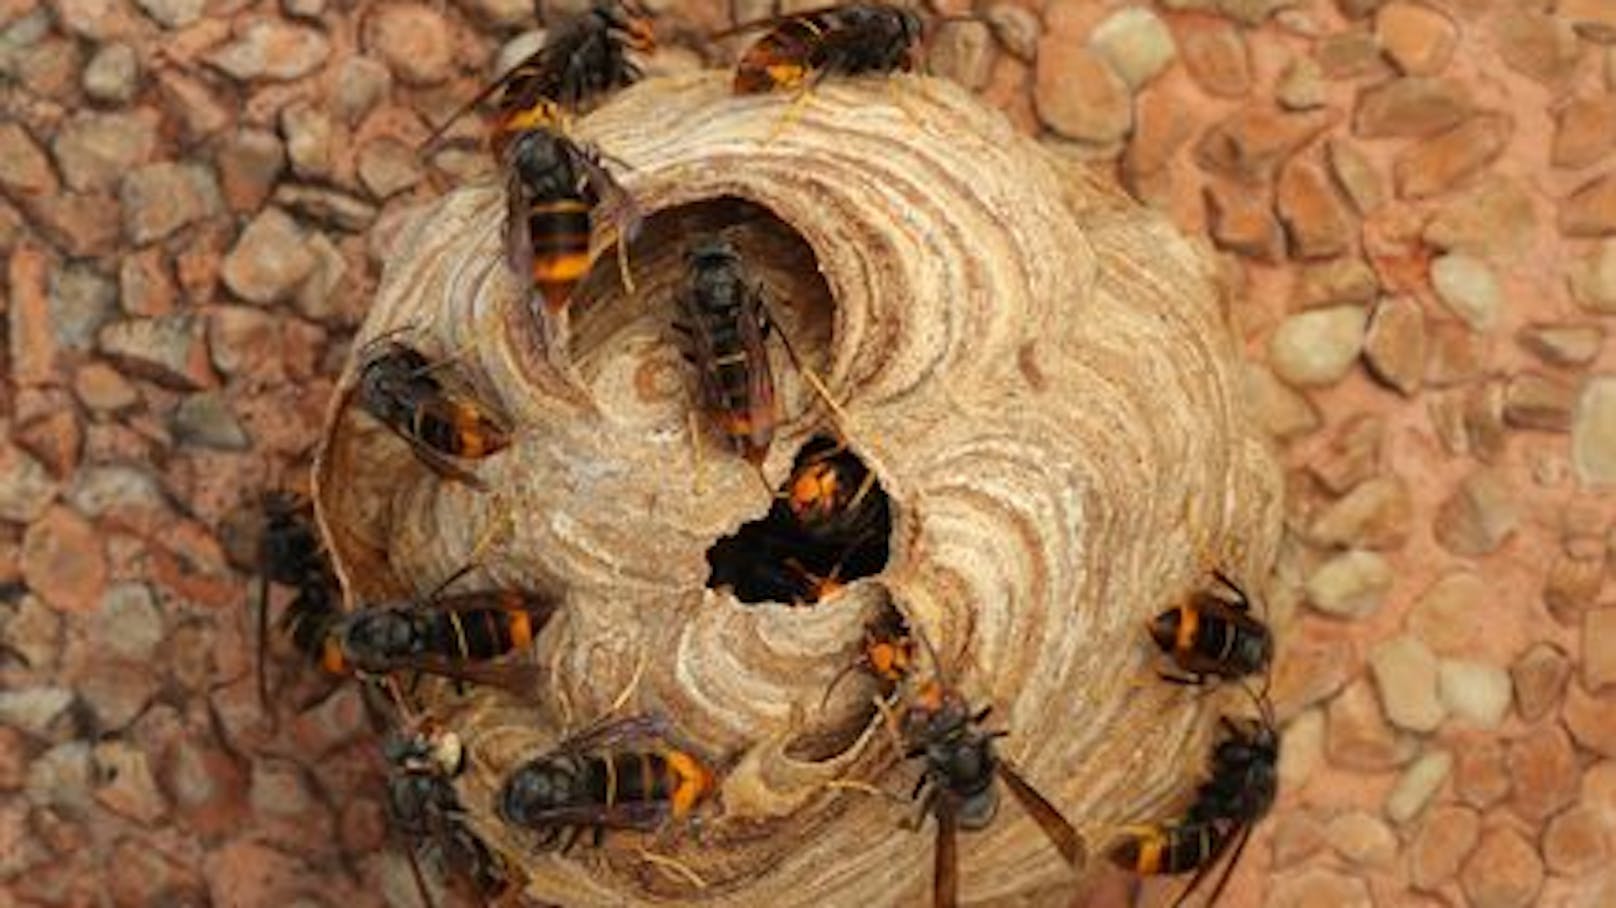 Das Nest der asiatischen Hornisse. Das Tier kann zur Gefahr für heimische Bienen werden.